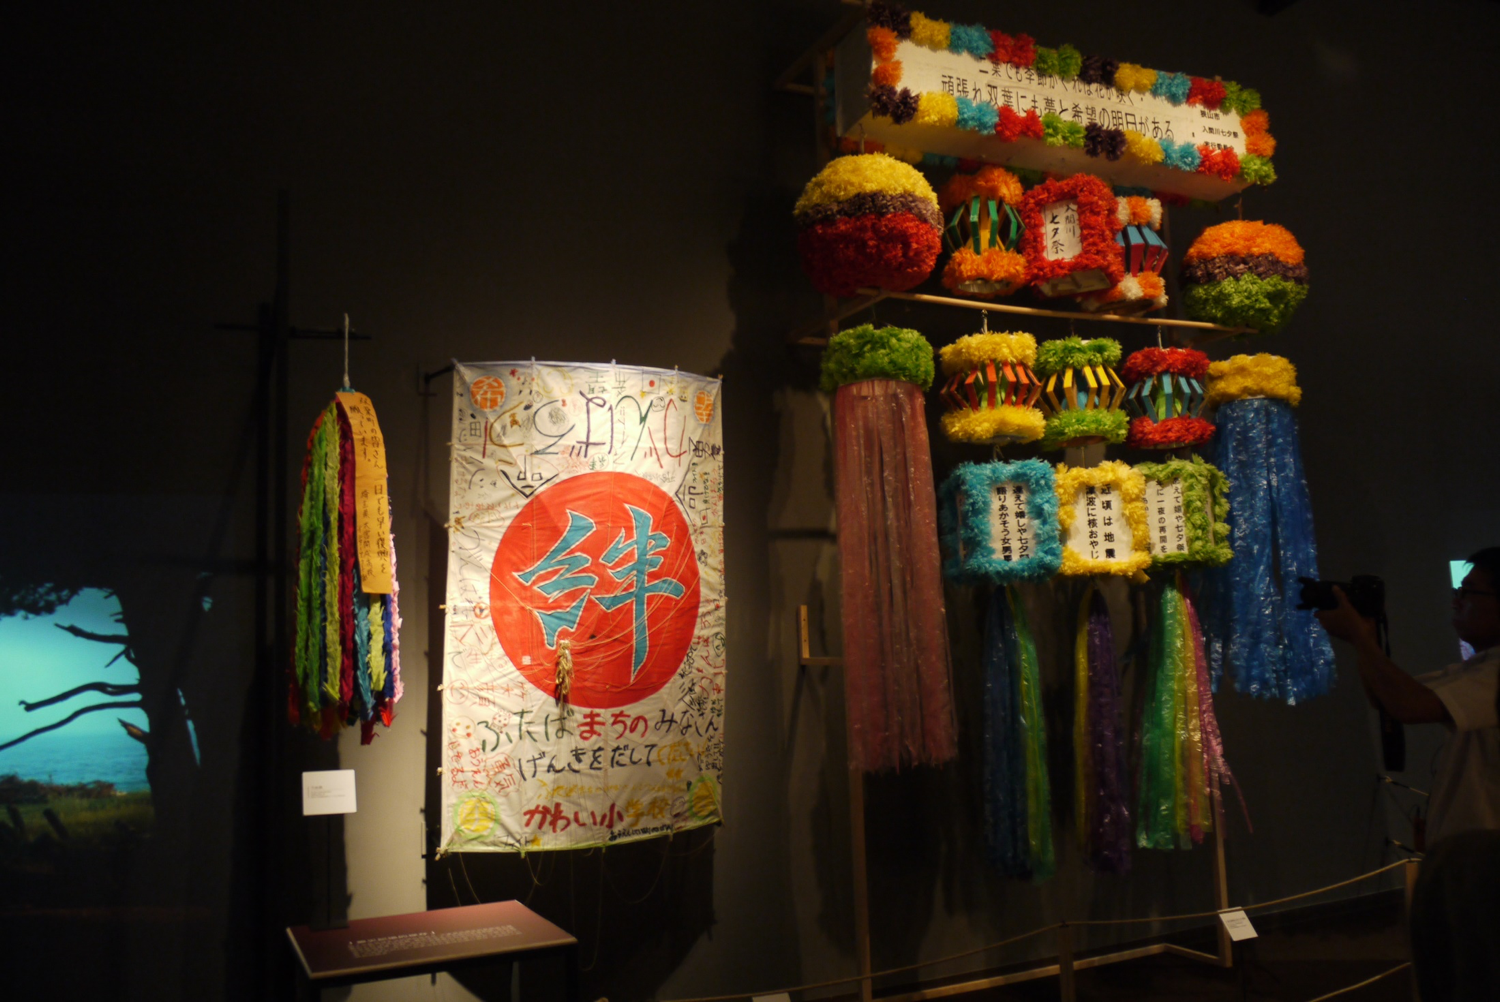 国立台湾歴史博物館の特別展における双葉町の資料の展示